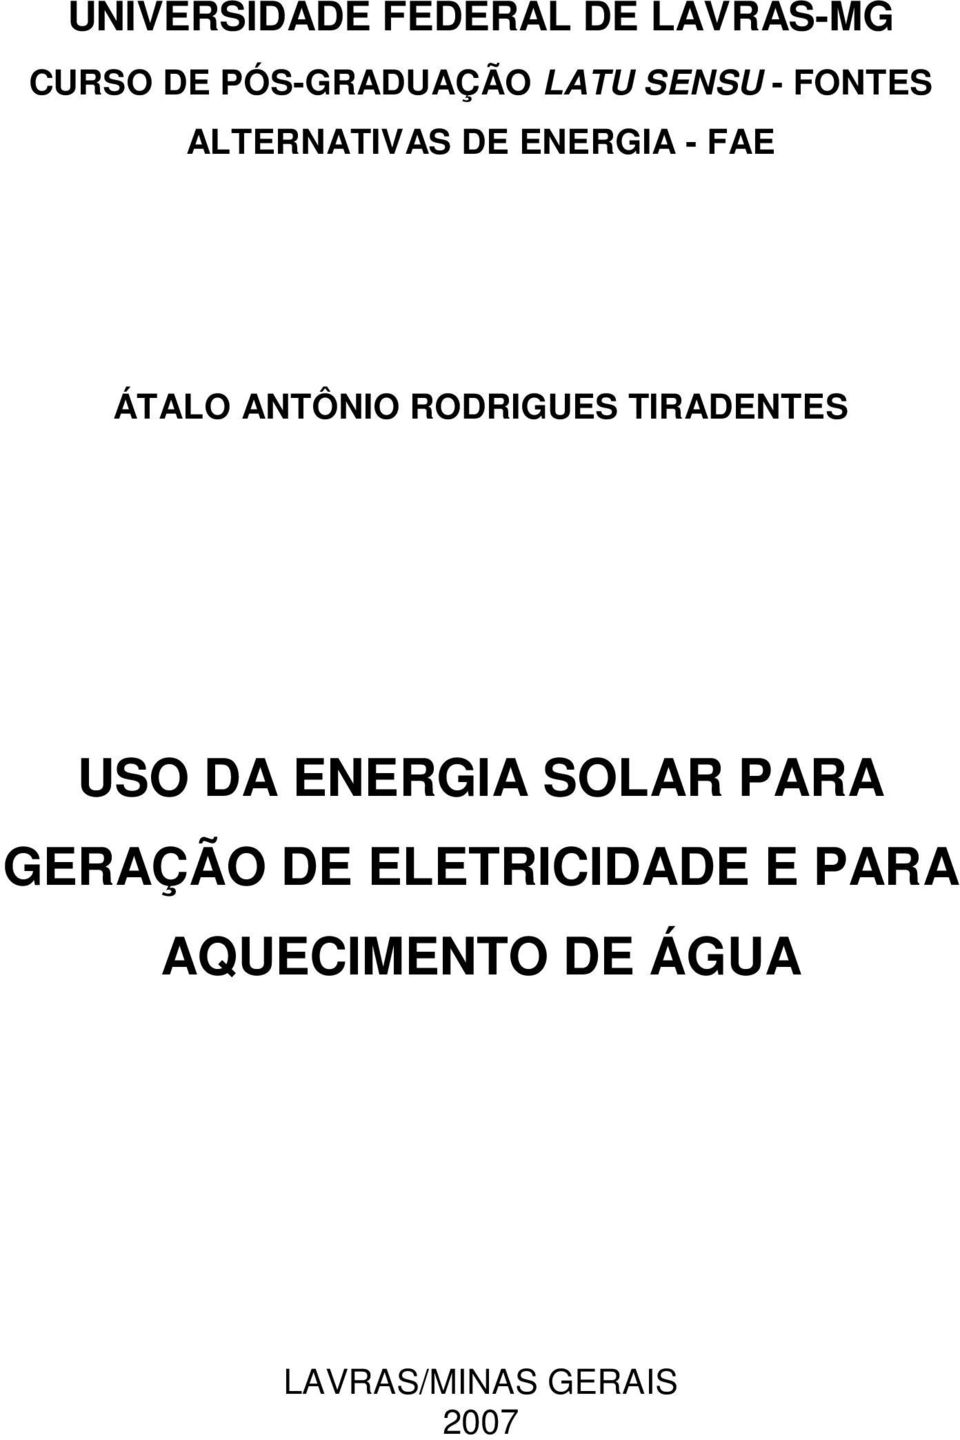 RODRIGUES TIRADENTES USO DA ENERGIA SOLAR PARA GERAÇÃO DE